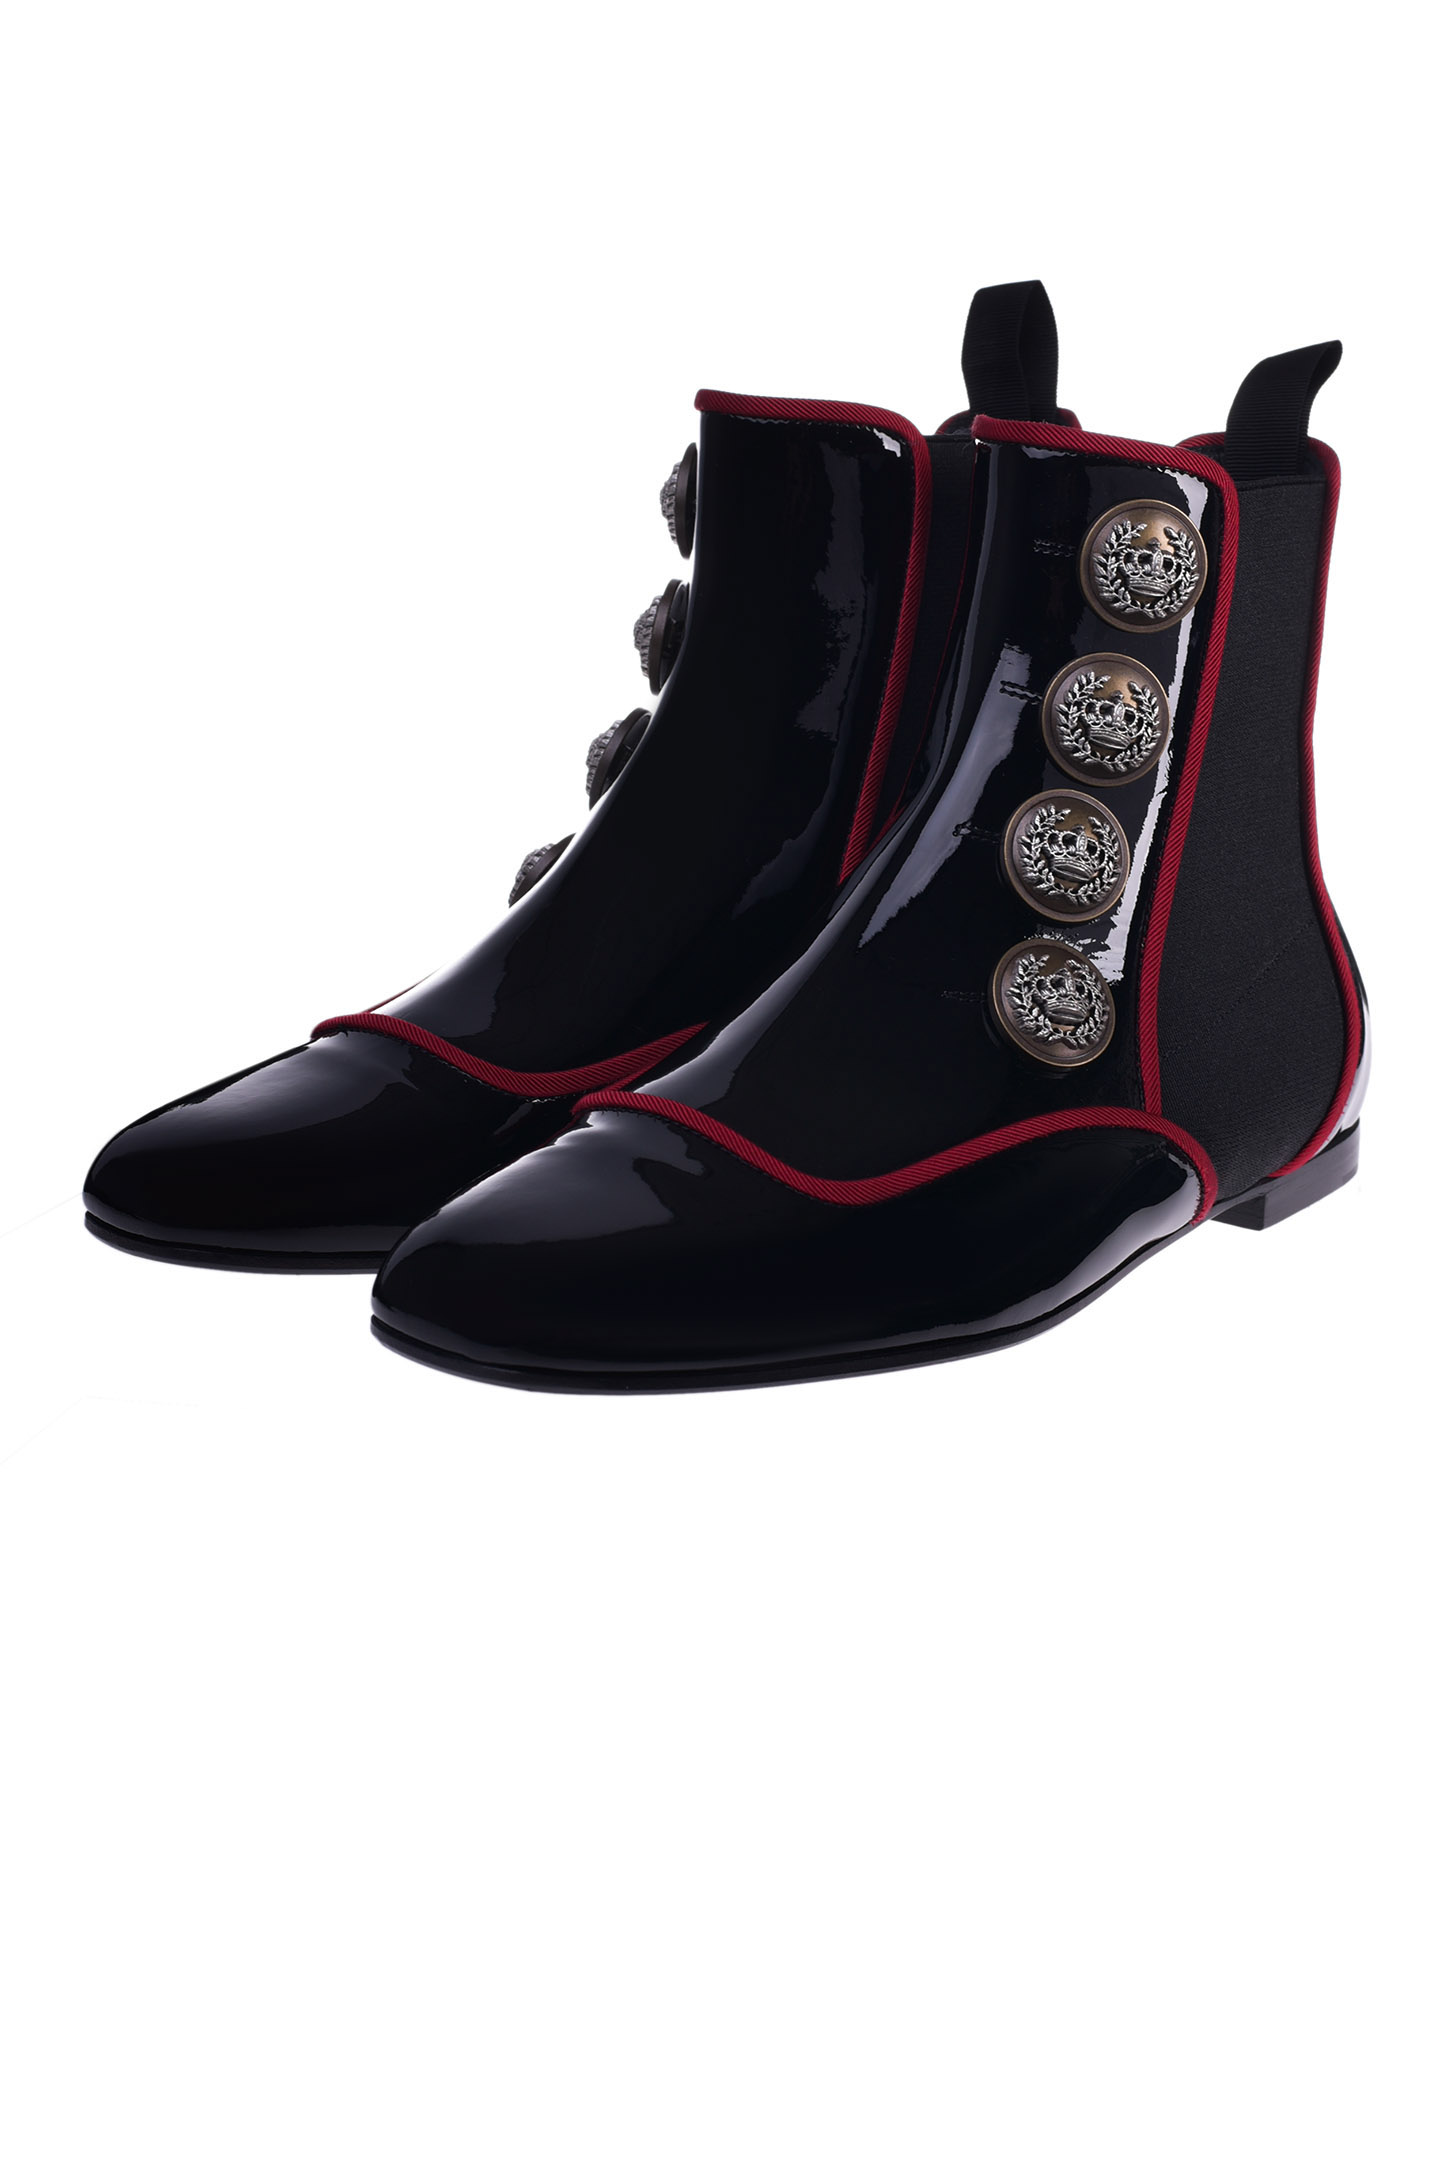 Ботинки DOLCE & GABBANA CT0624 AJ861, цвет: Черный, Женский